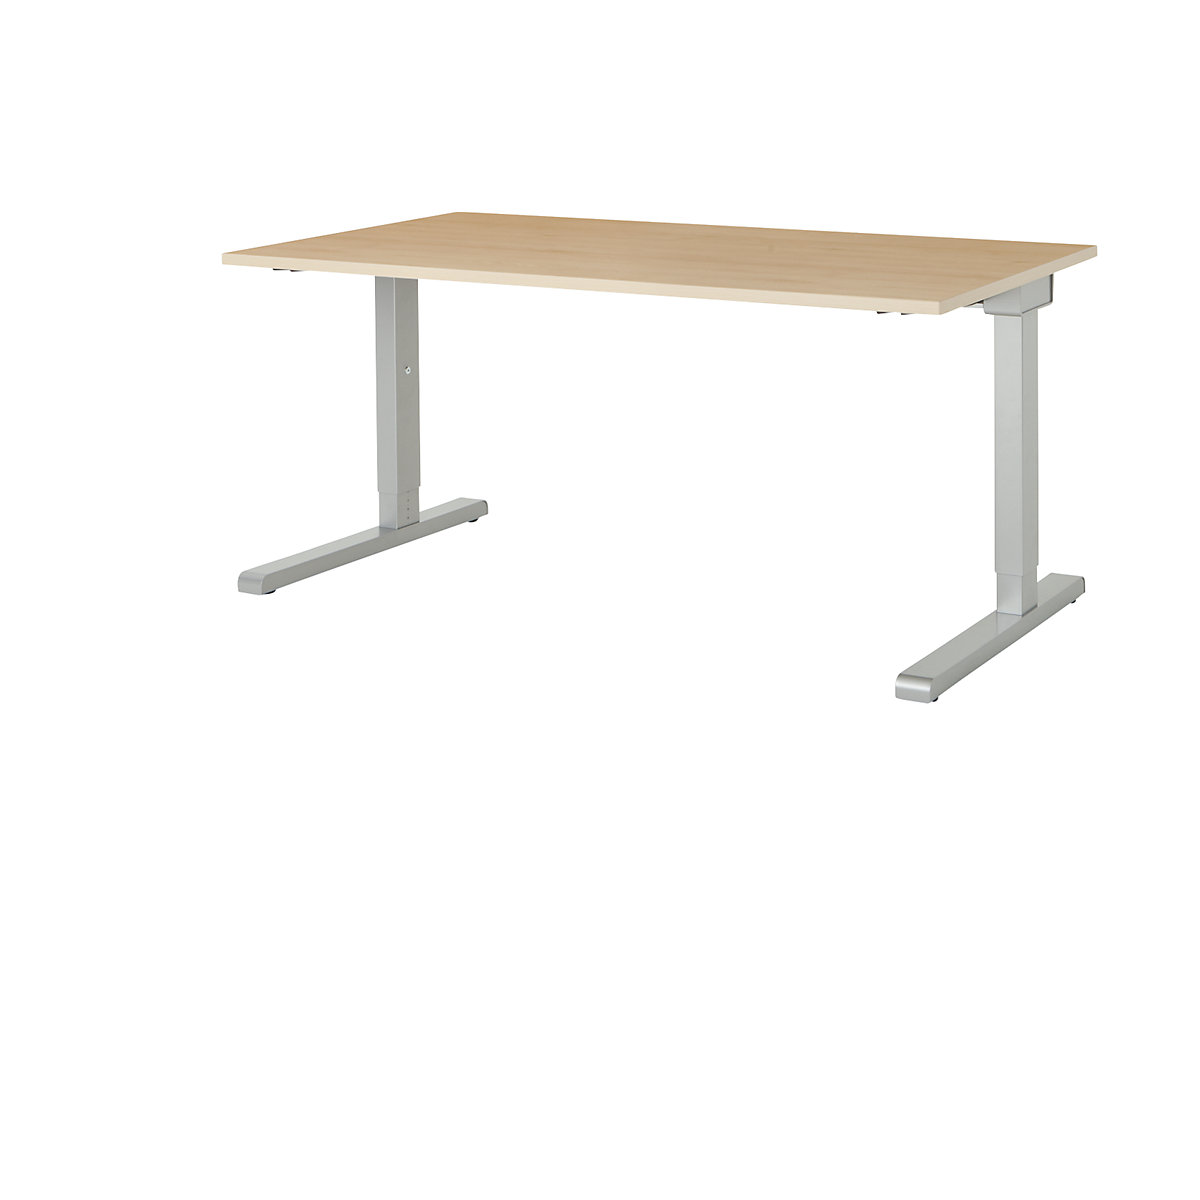 Pravokutni stol, noga u obliku slova C – mauser, ŠxD 1600 x 800 mm, ploča u imitaciji javora, postolje u boji aluminija-2